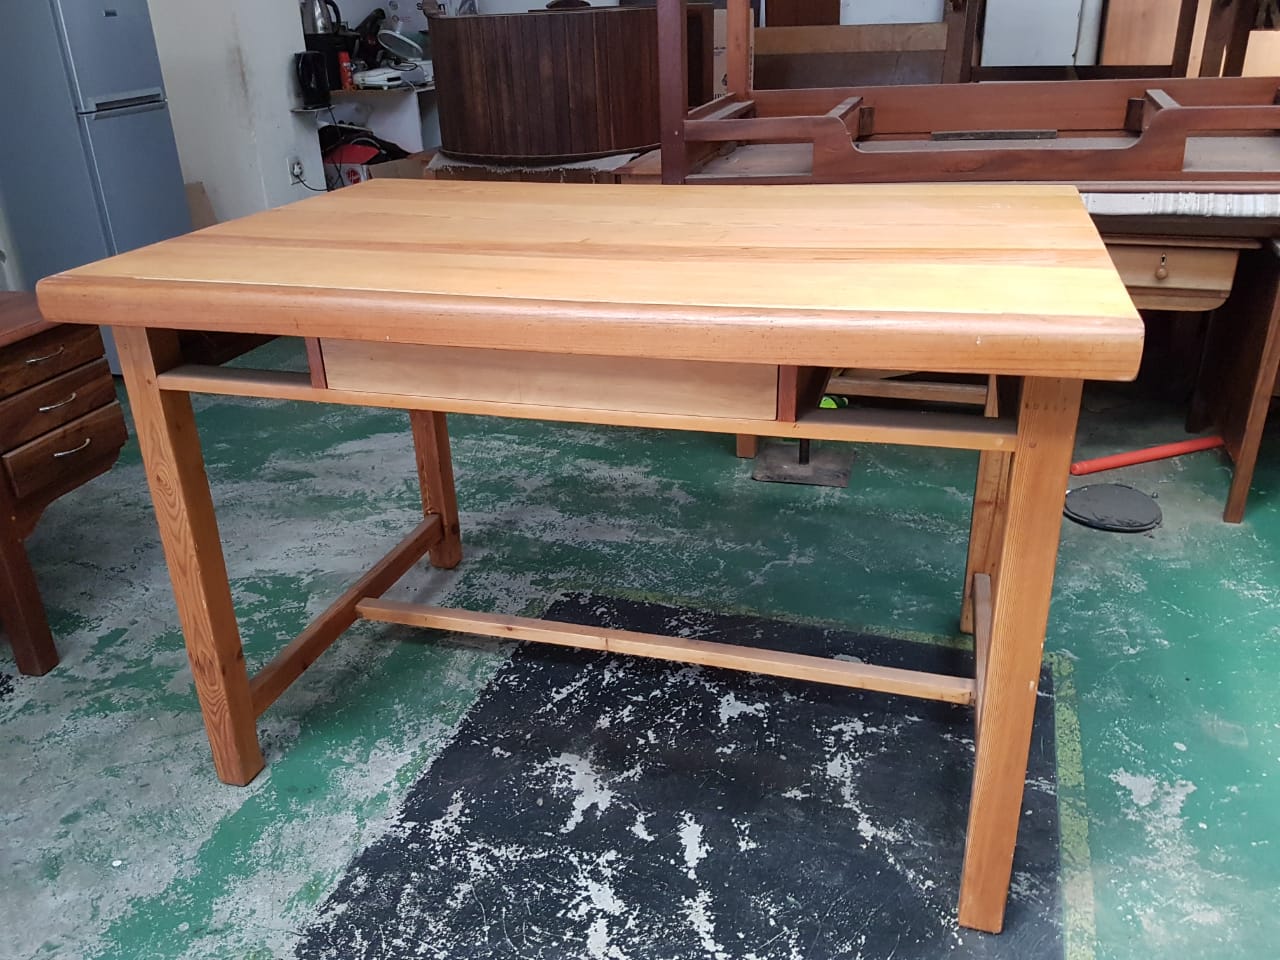 Solid wooden desk